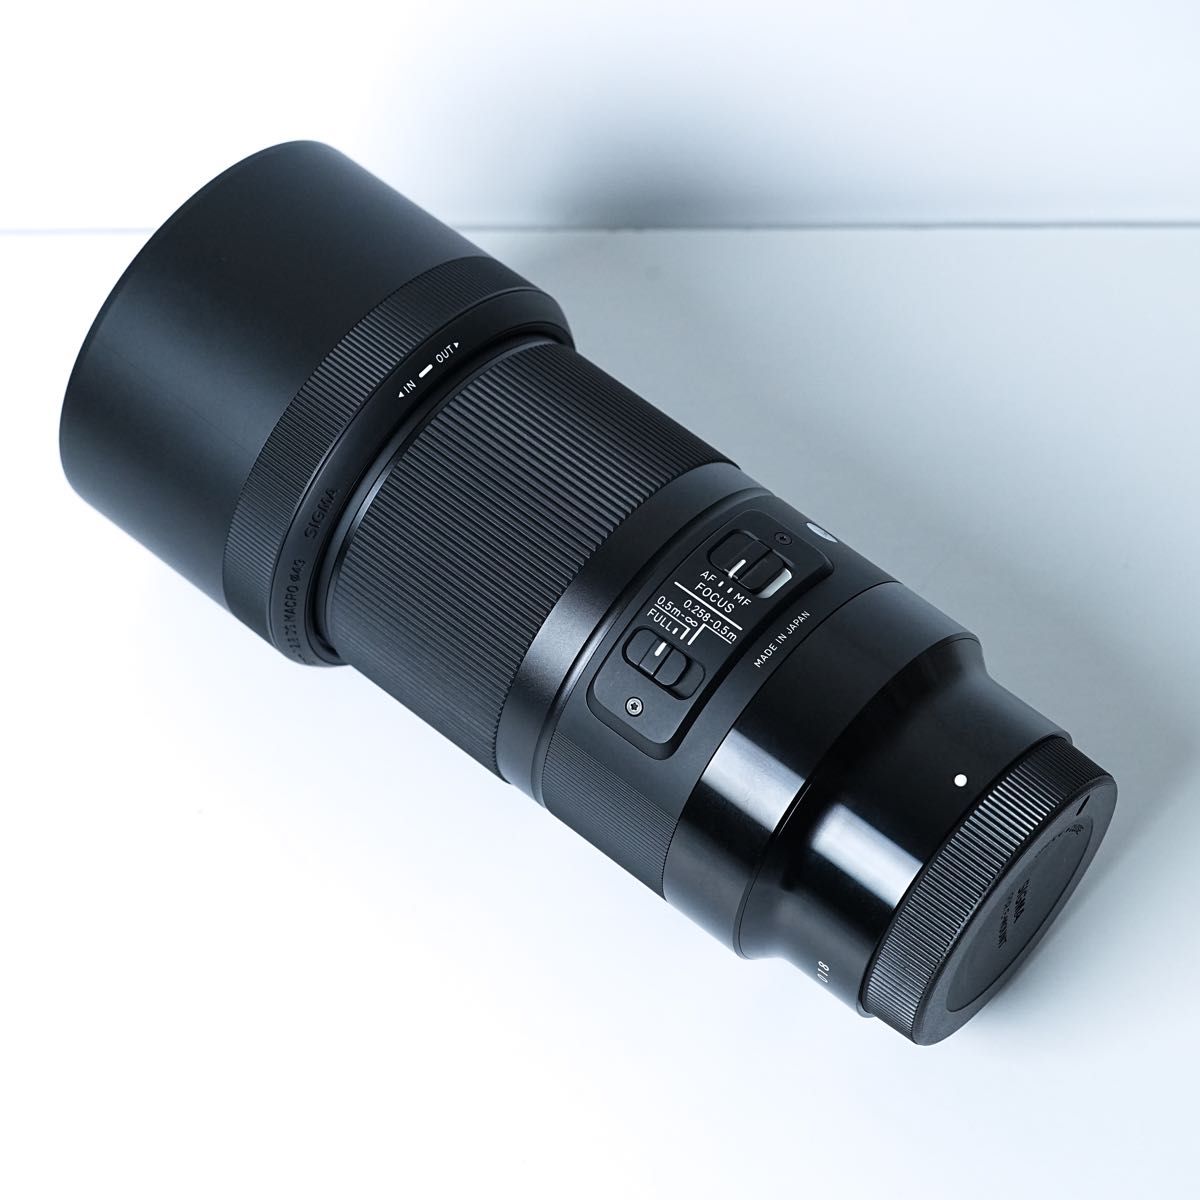 SIGMA シグマ Sony E マウント レンズ 70mm F2.8 DG MACRO カミソリマクロ 単焦点